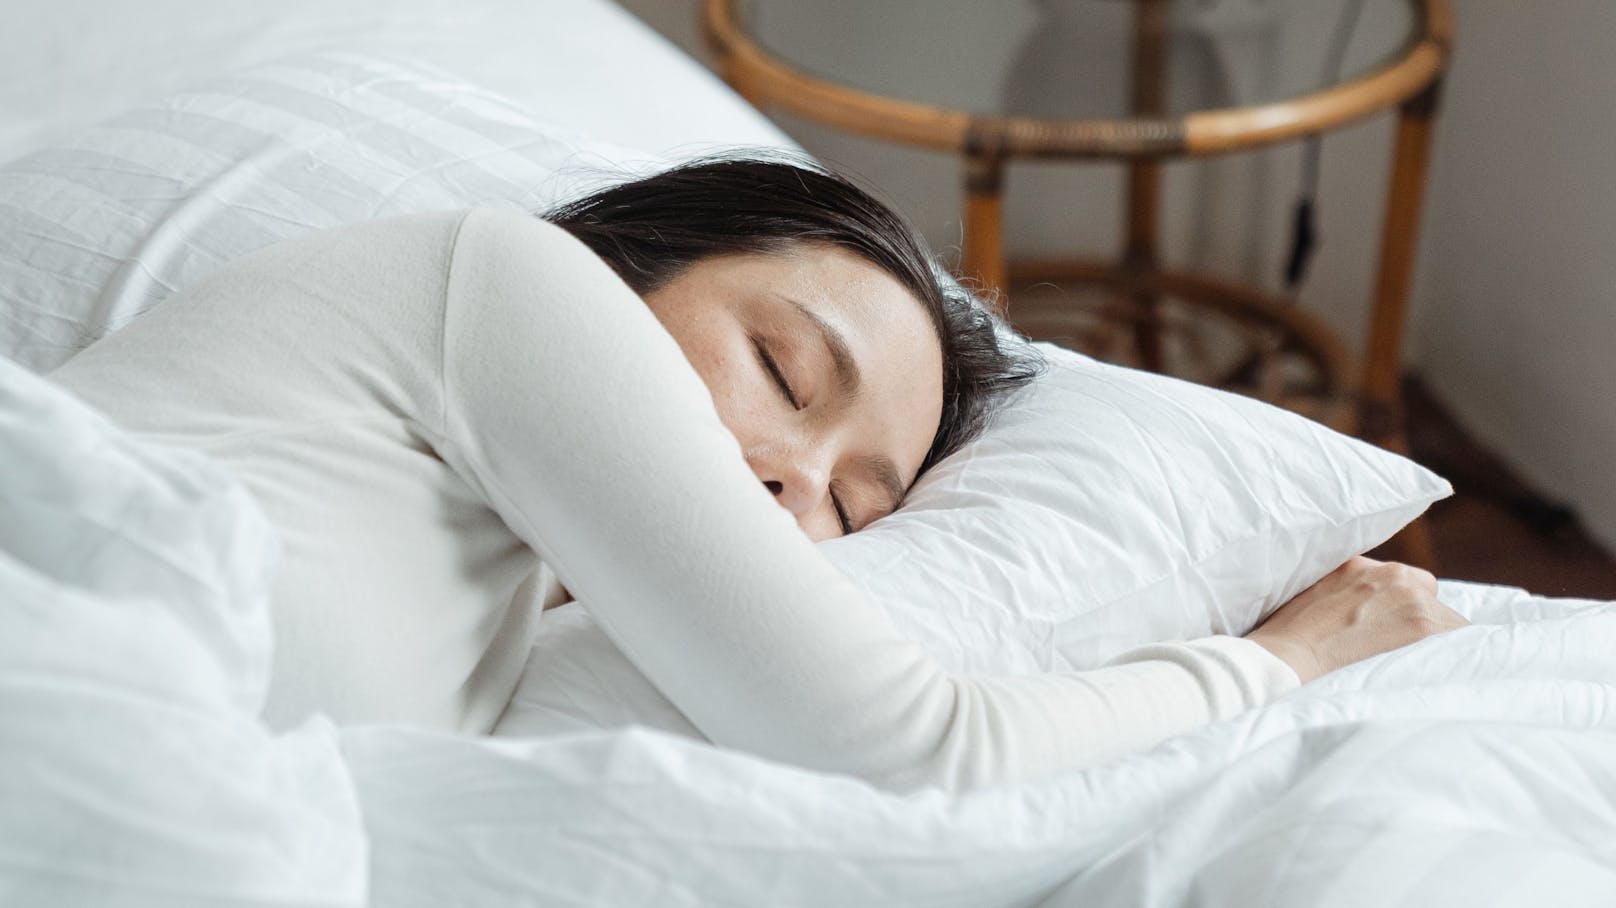 Gibt es einen Zusammenhang zwischen deinem Wohnort und deiner Schlafqualität? Eine Studie will das herausgefunden haben.